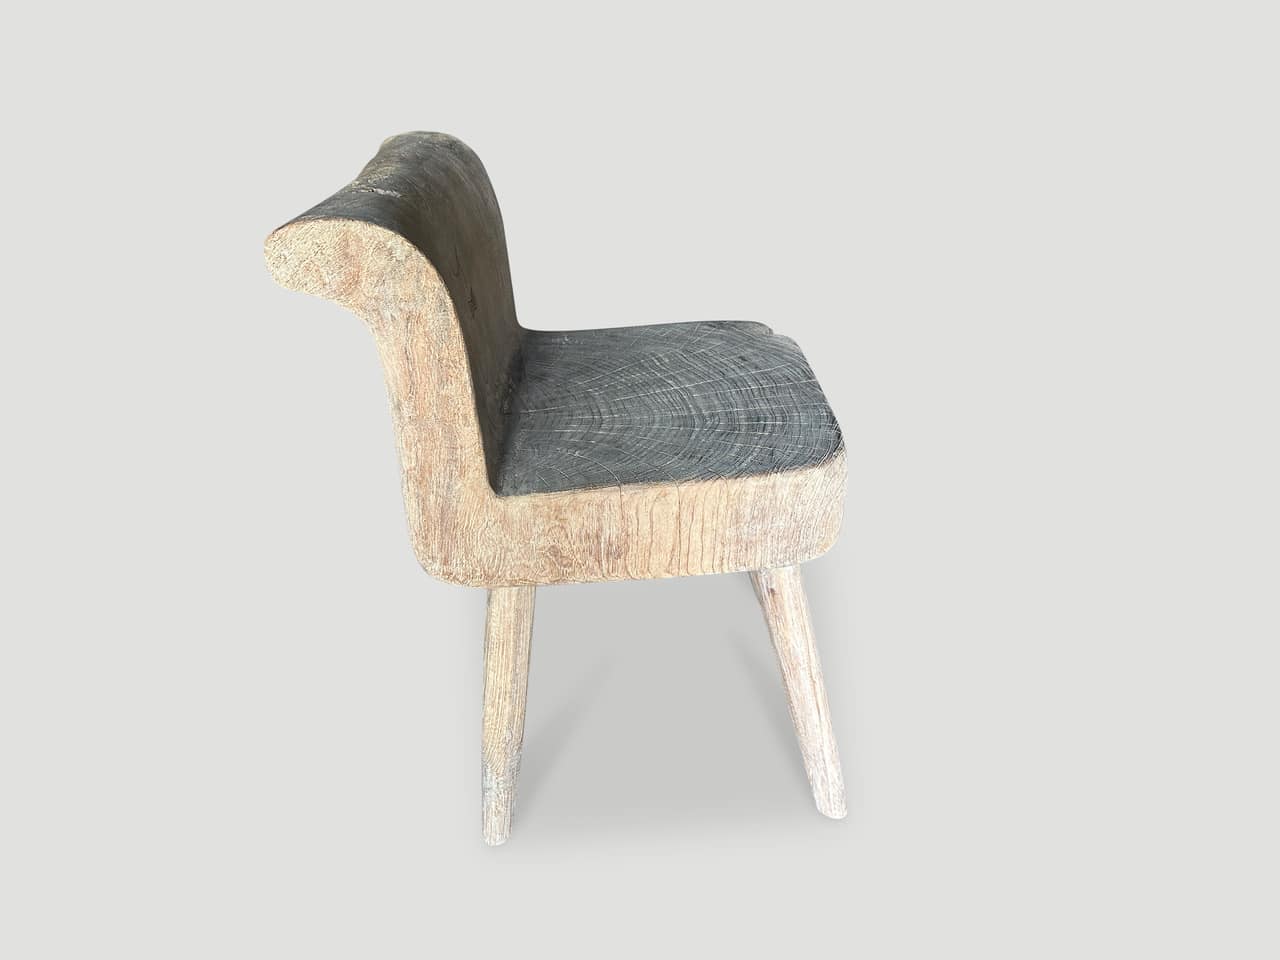 teak wood sculptural chair or side table